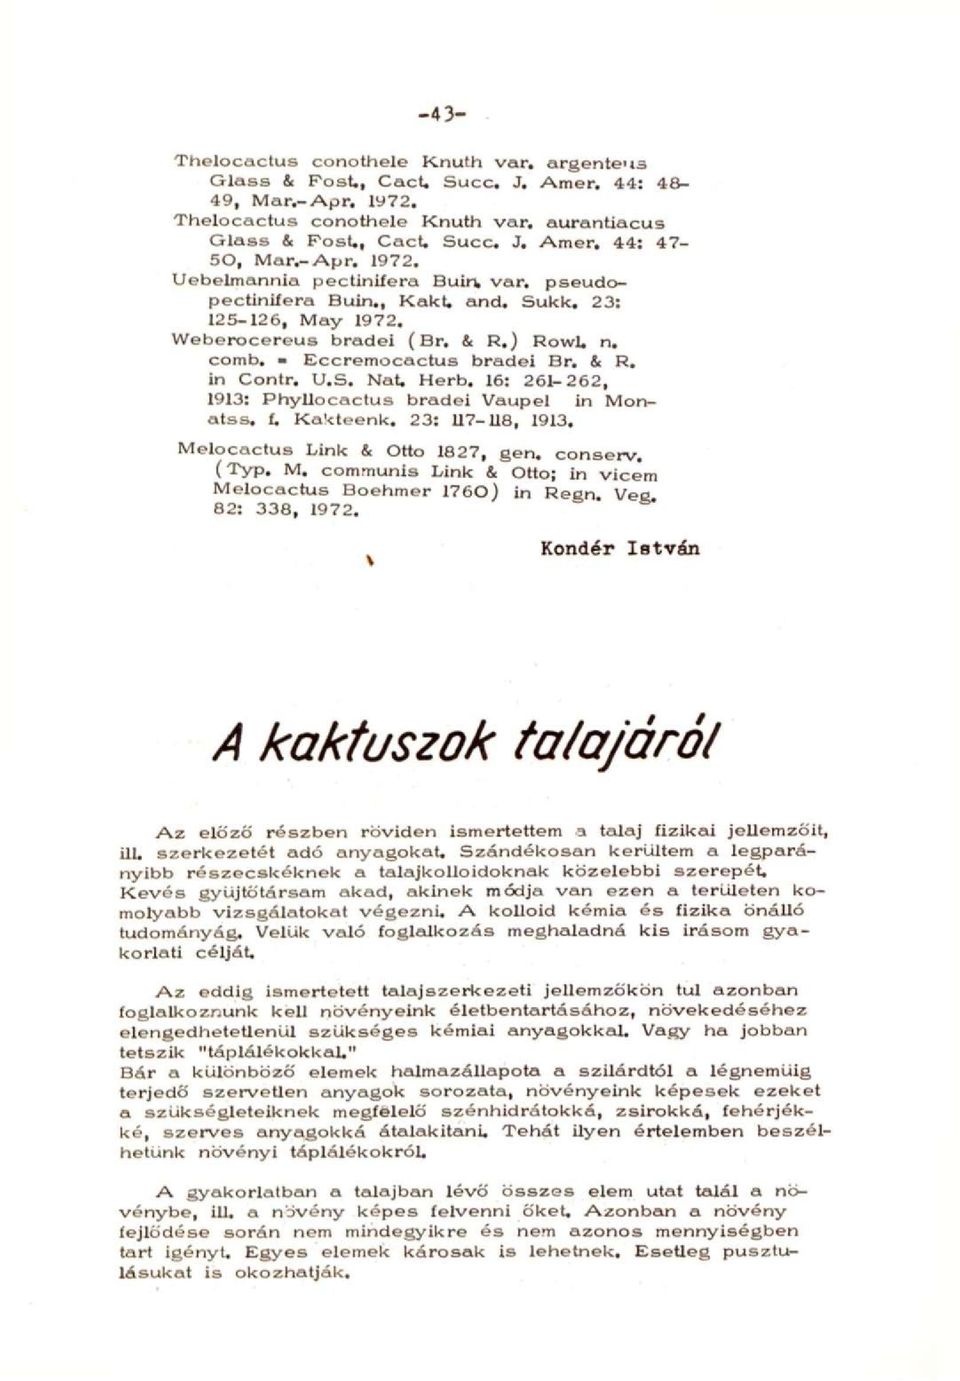 & R. in Contr. U.S. Nat. Herb. 16: 261-262, 1913: Phyllocactus bradei Vaupel in Monatss. í. Kakteenk. 23: U7-U8, 1913. Melocactus Link & Ottó 1827, gen. conserv. (Typ, M.